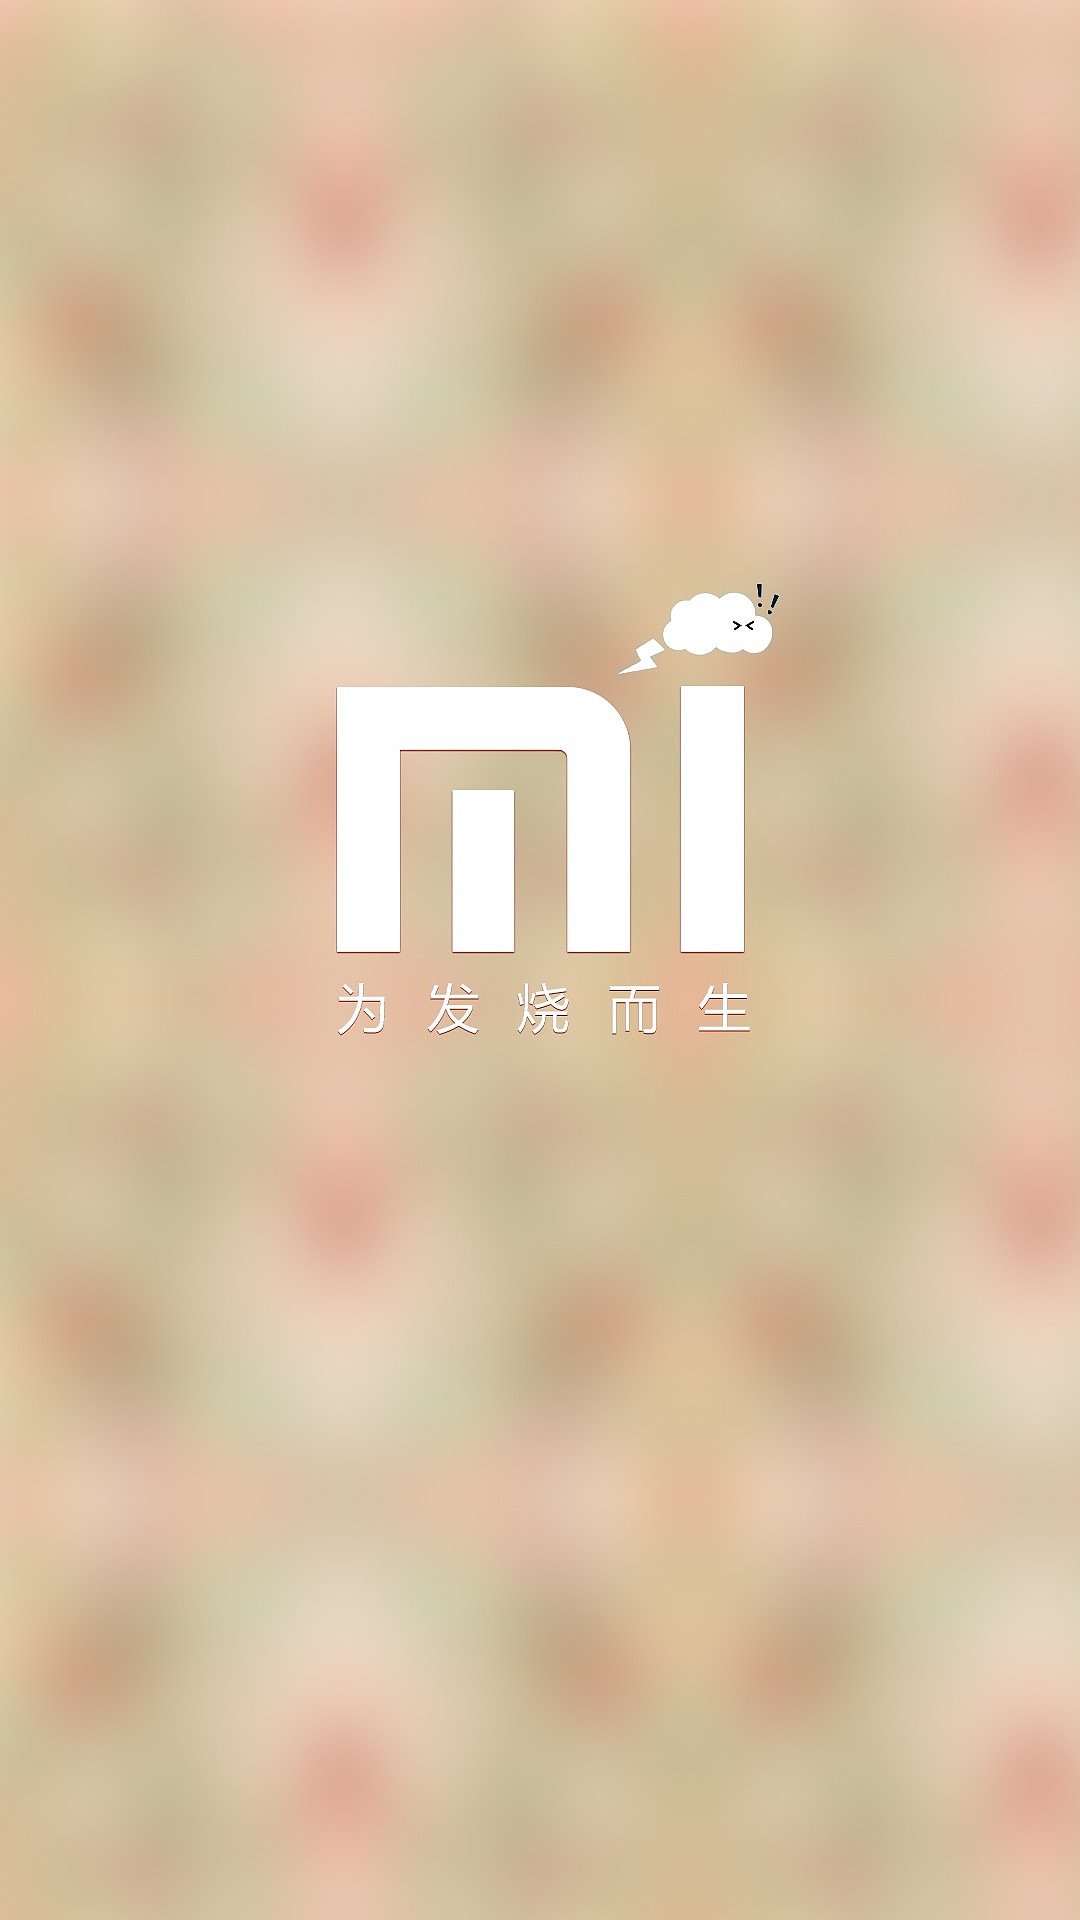 小米logo壁纸图片